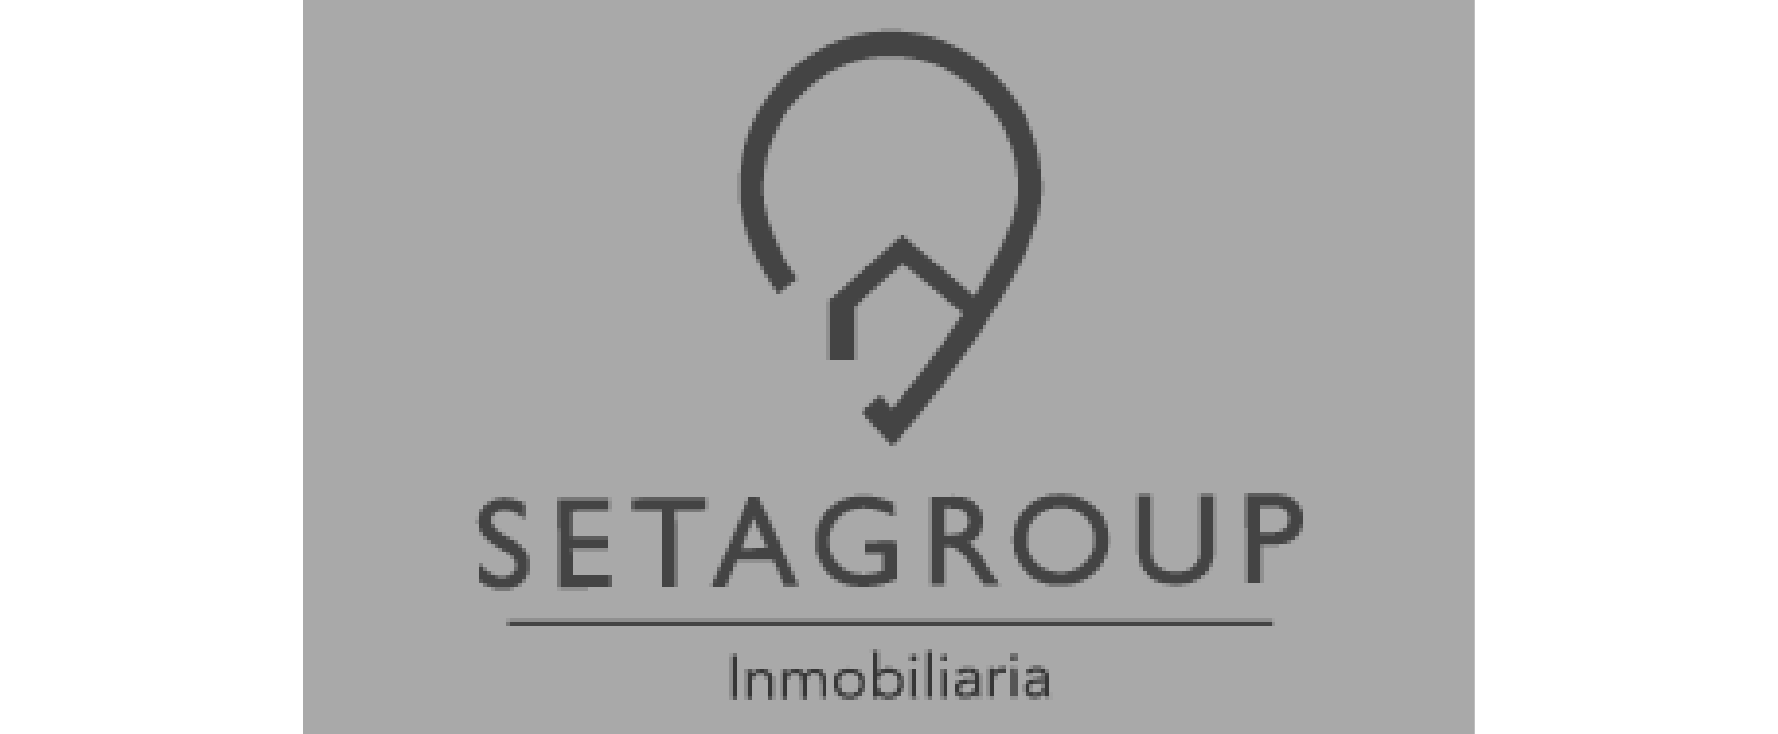 Logo inmobiliaria SetaGroup